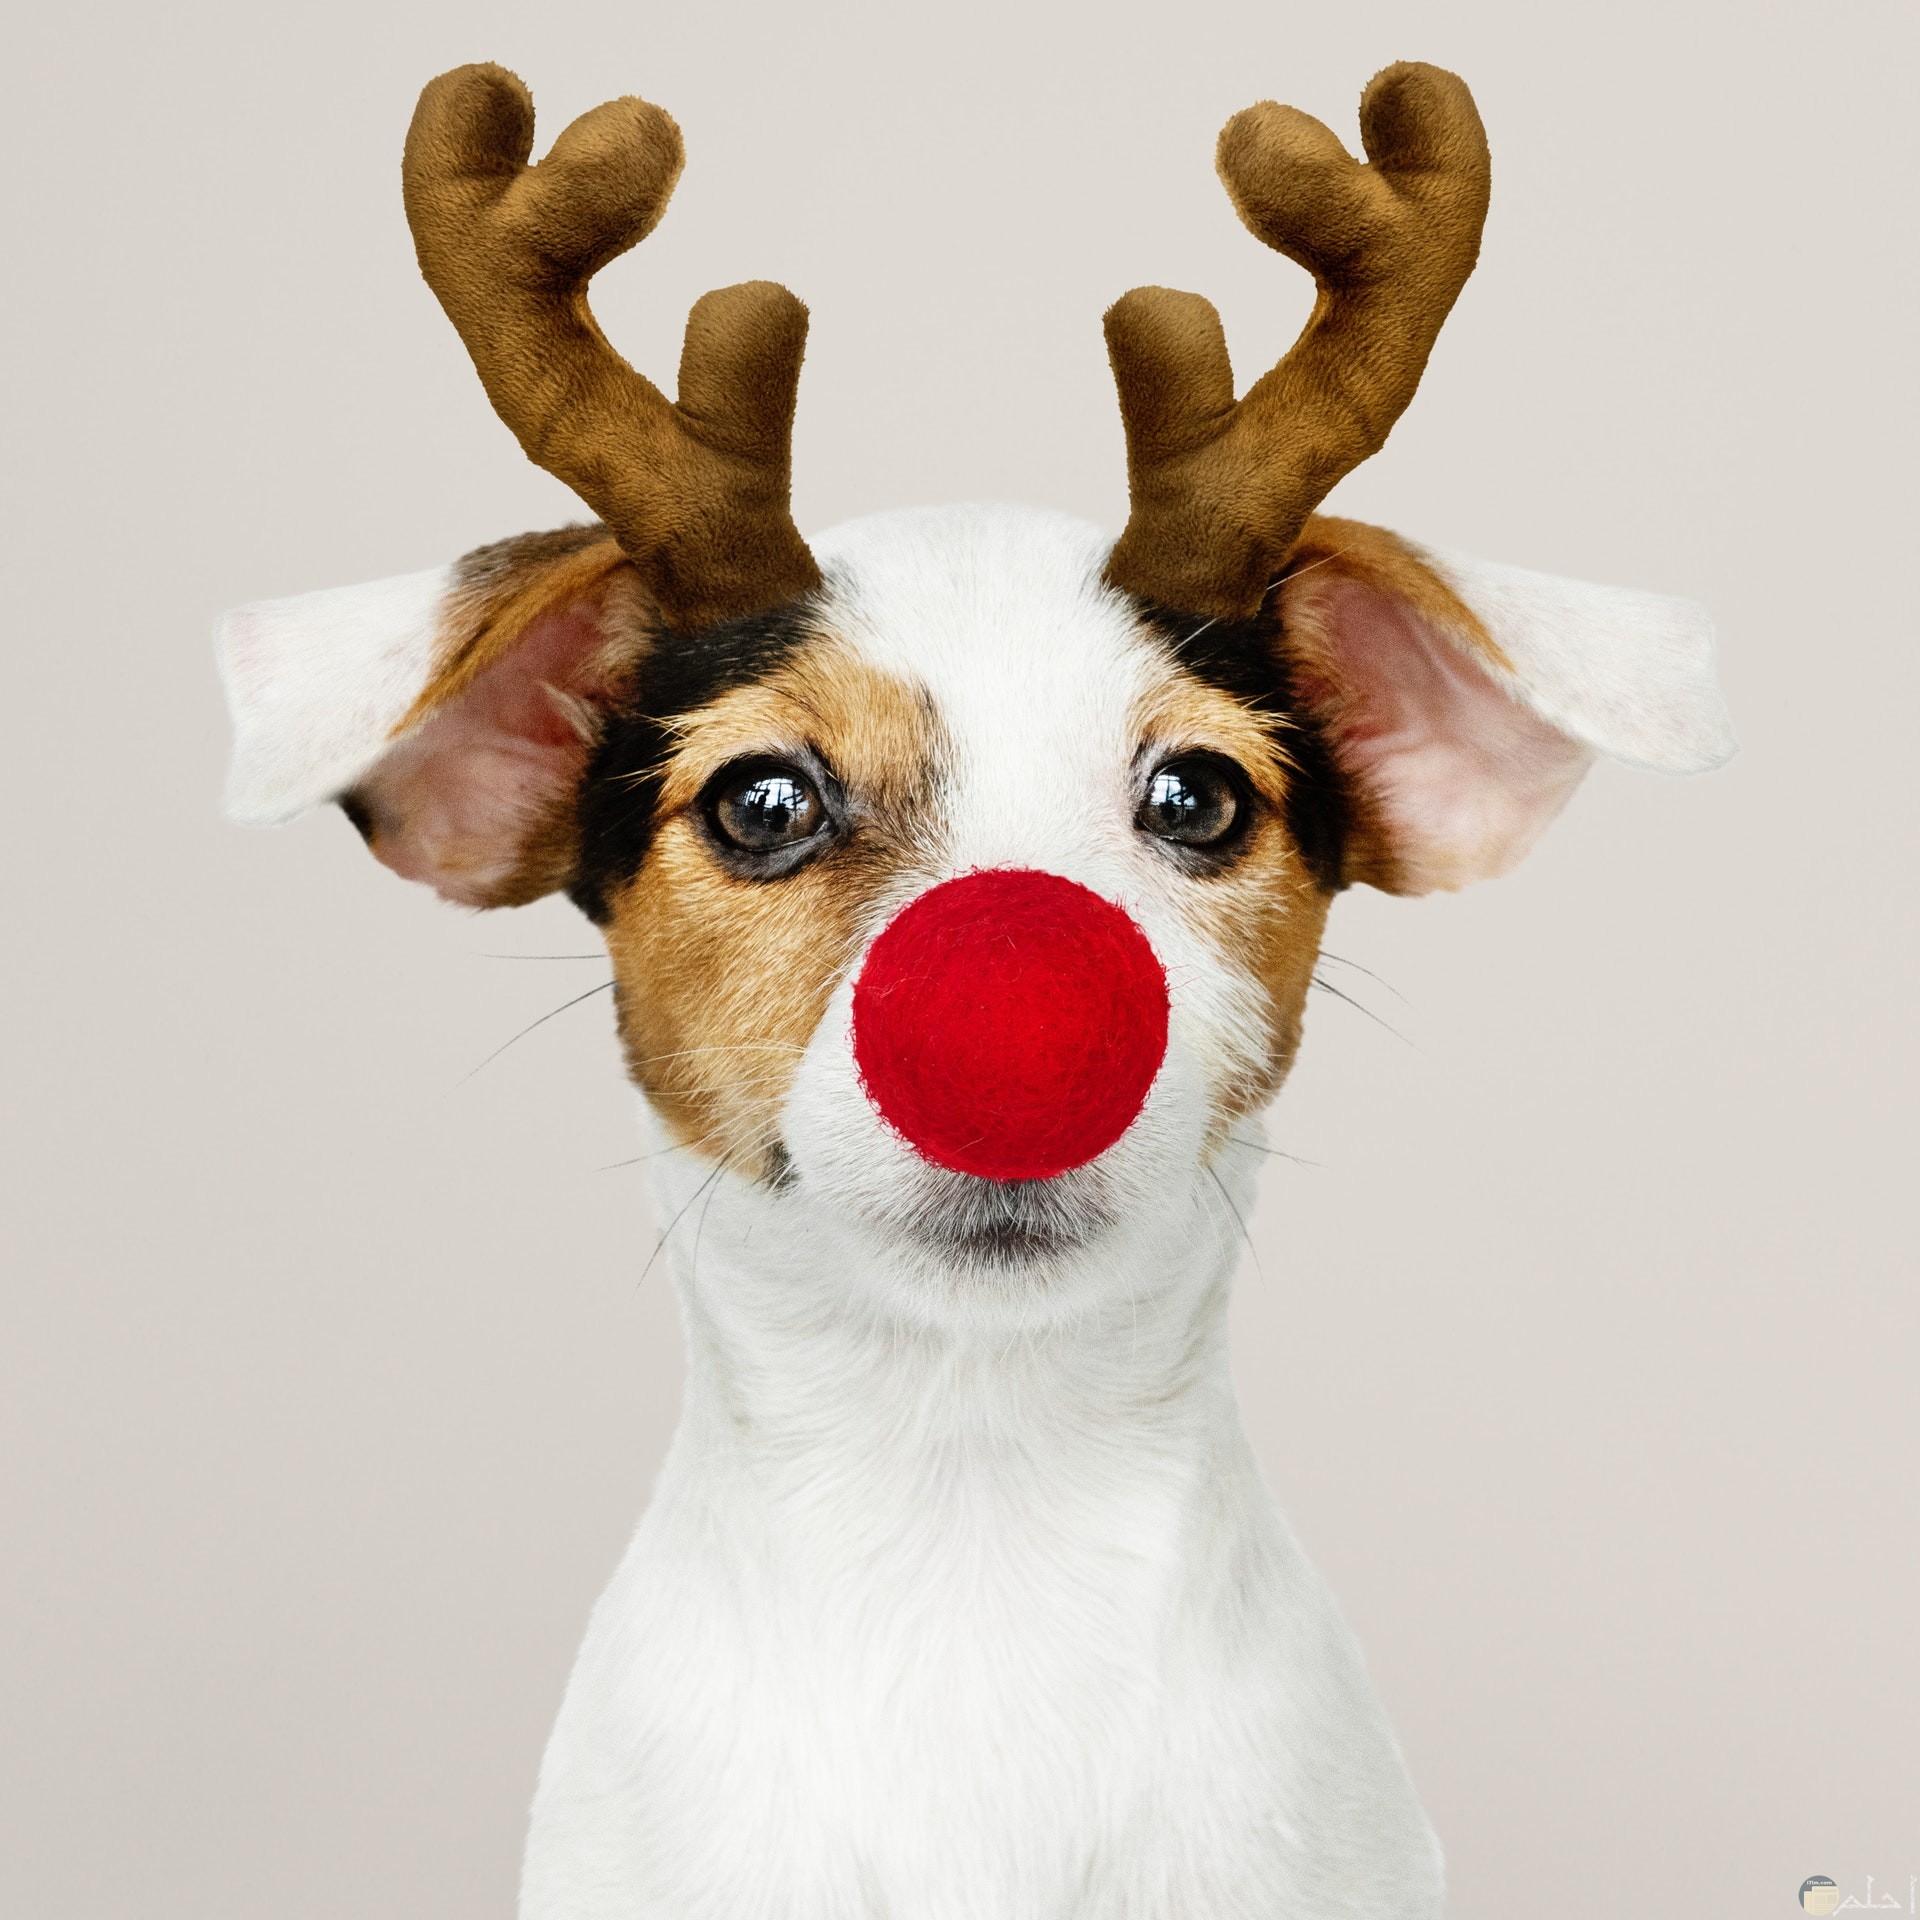 صورة مضحكة جدا لكلب يرتدي أنف أحمر وقرني غزال